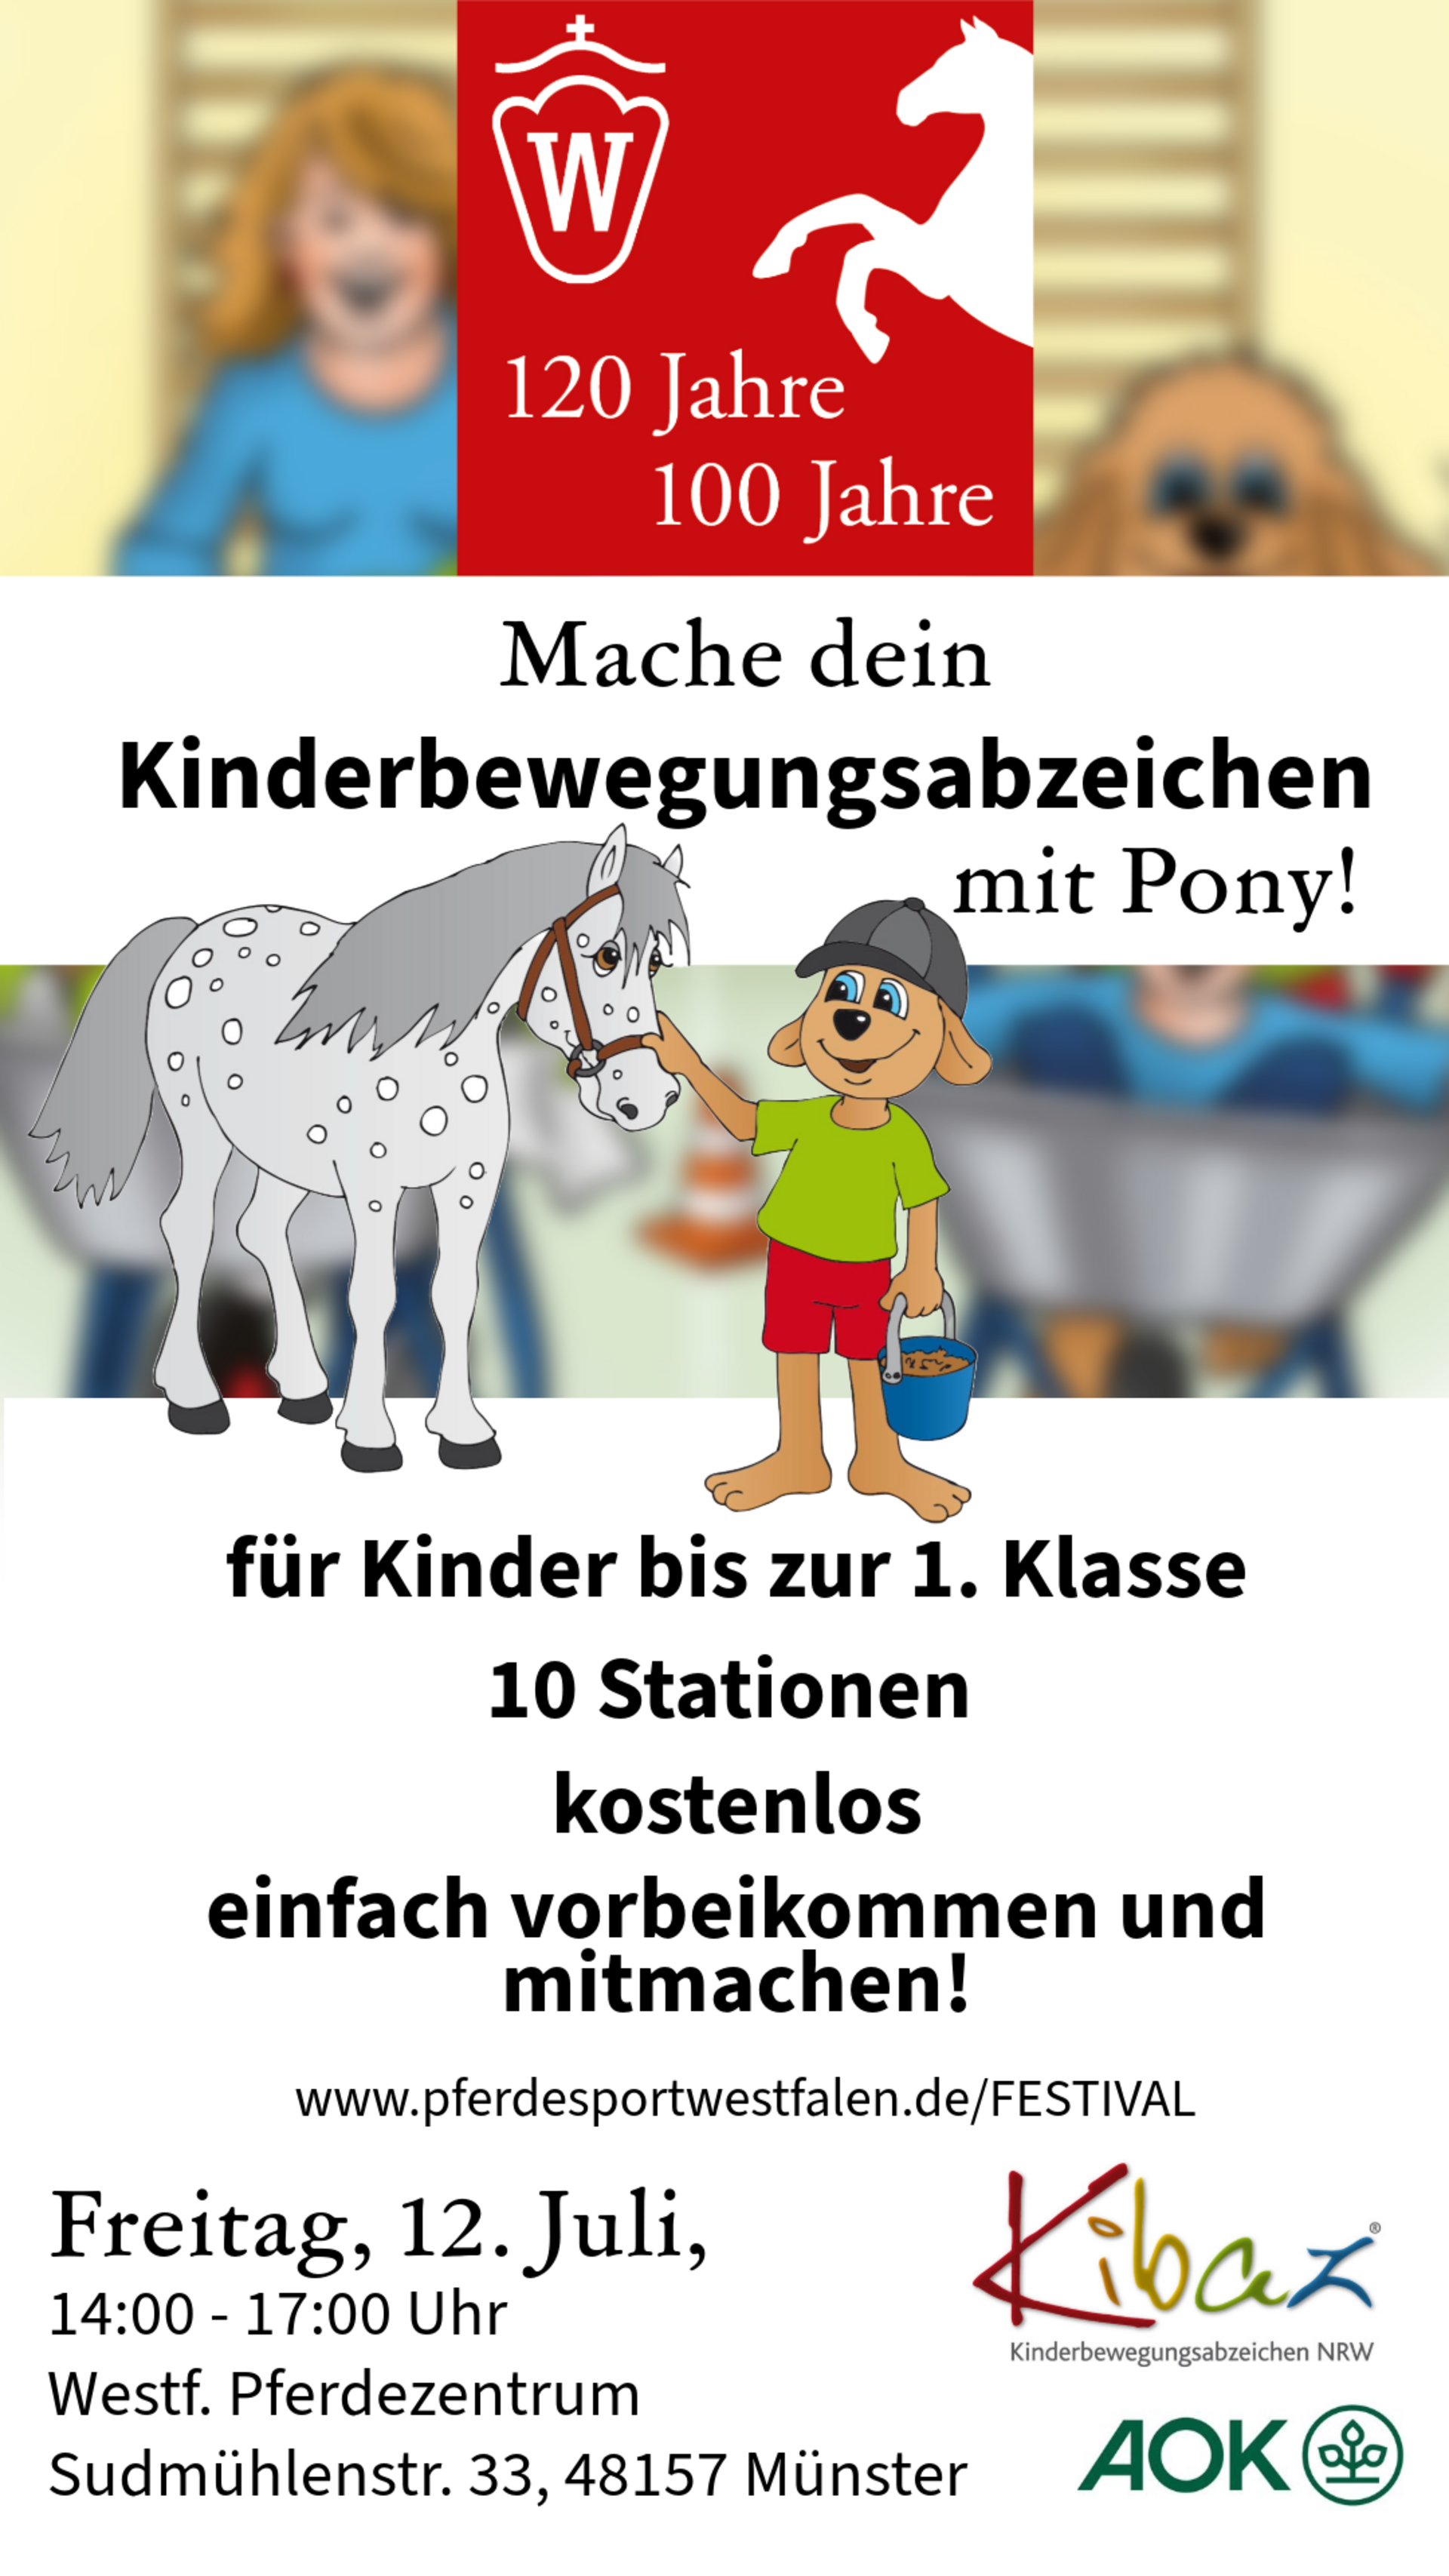 Kinderbewegungsabzeichen mit Pony